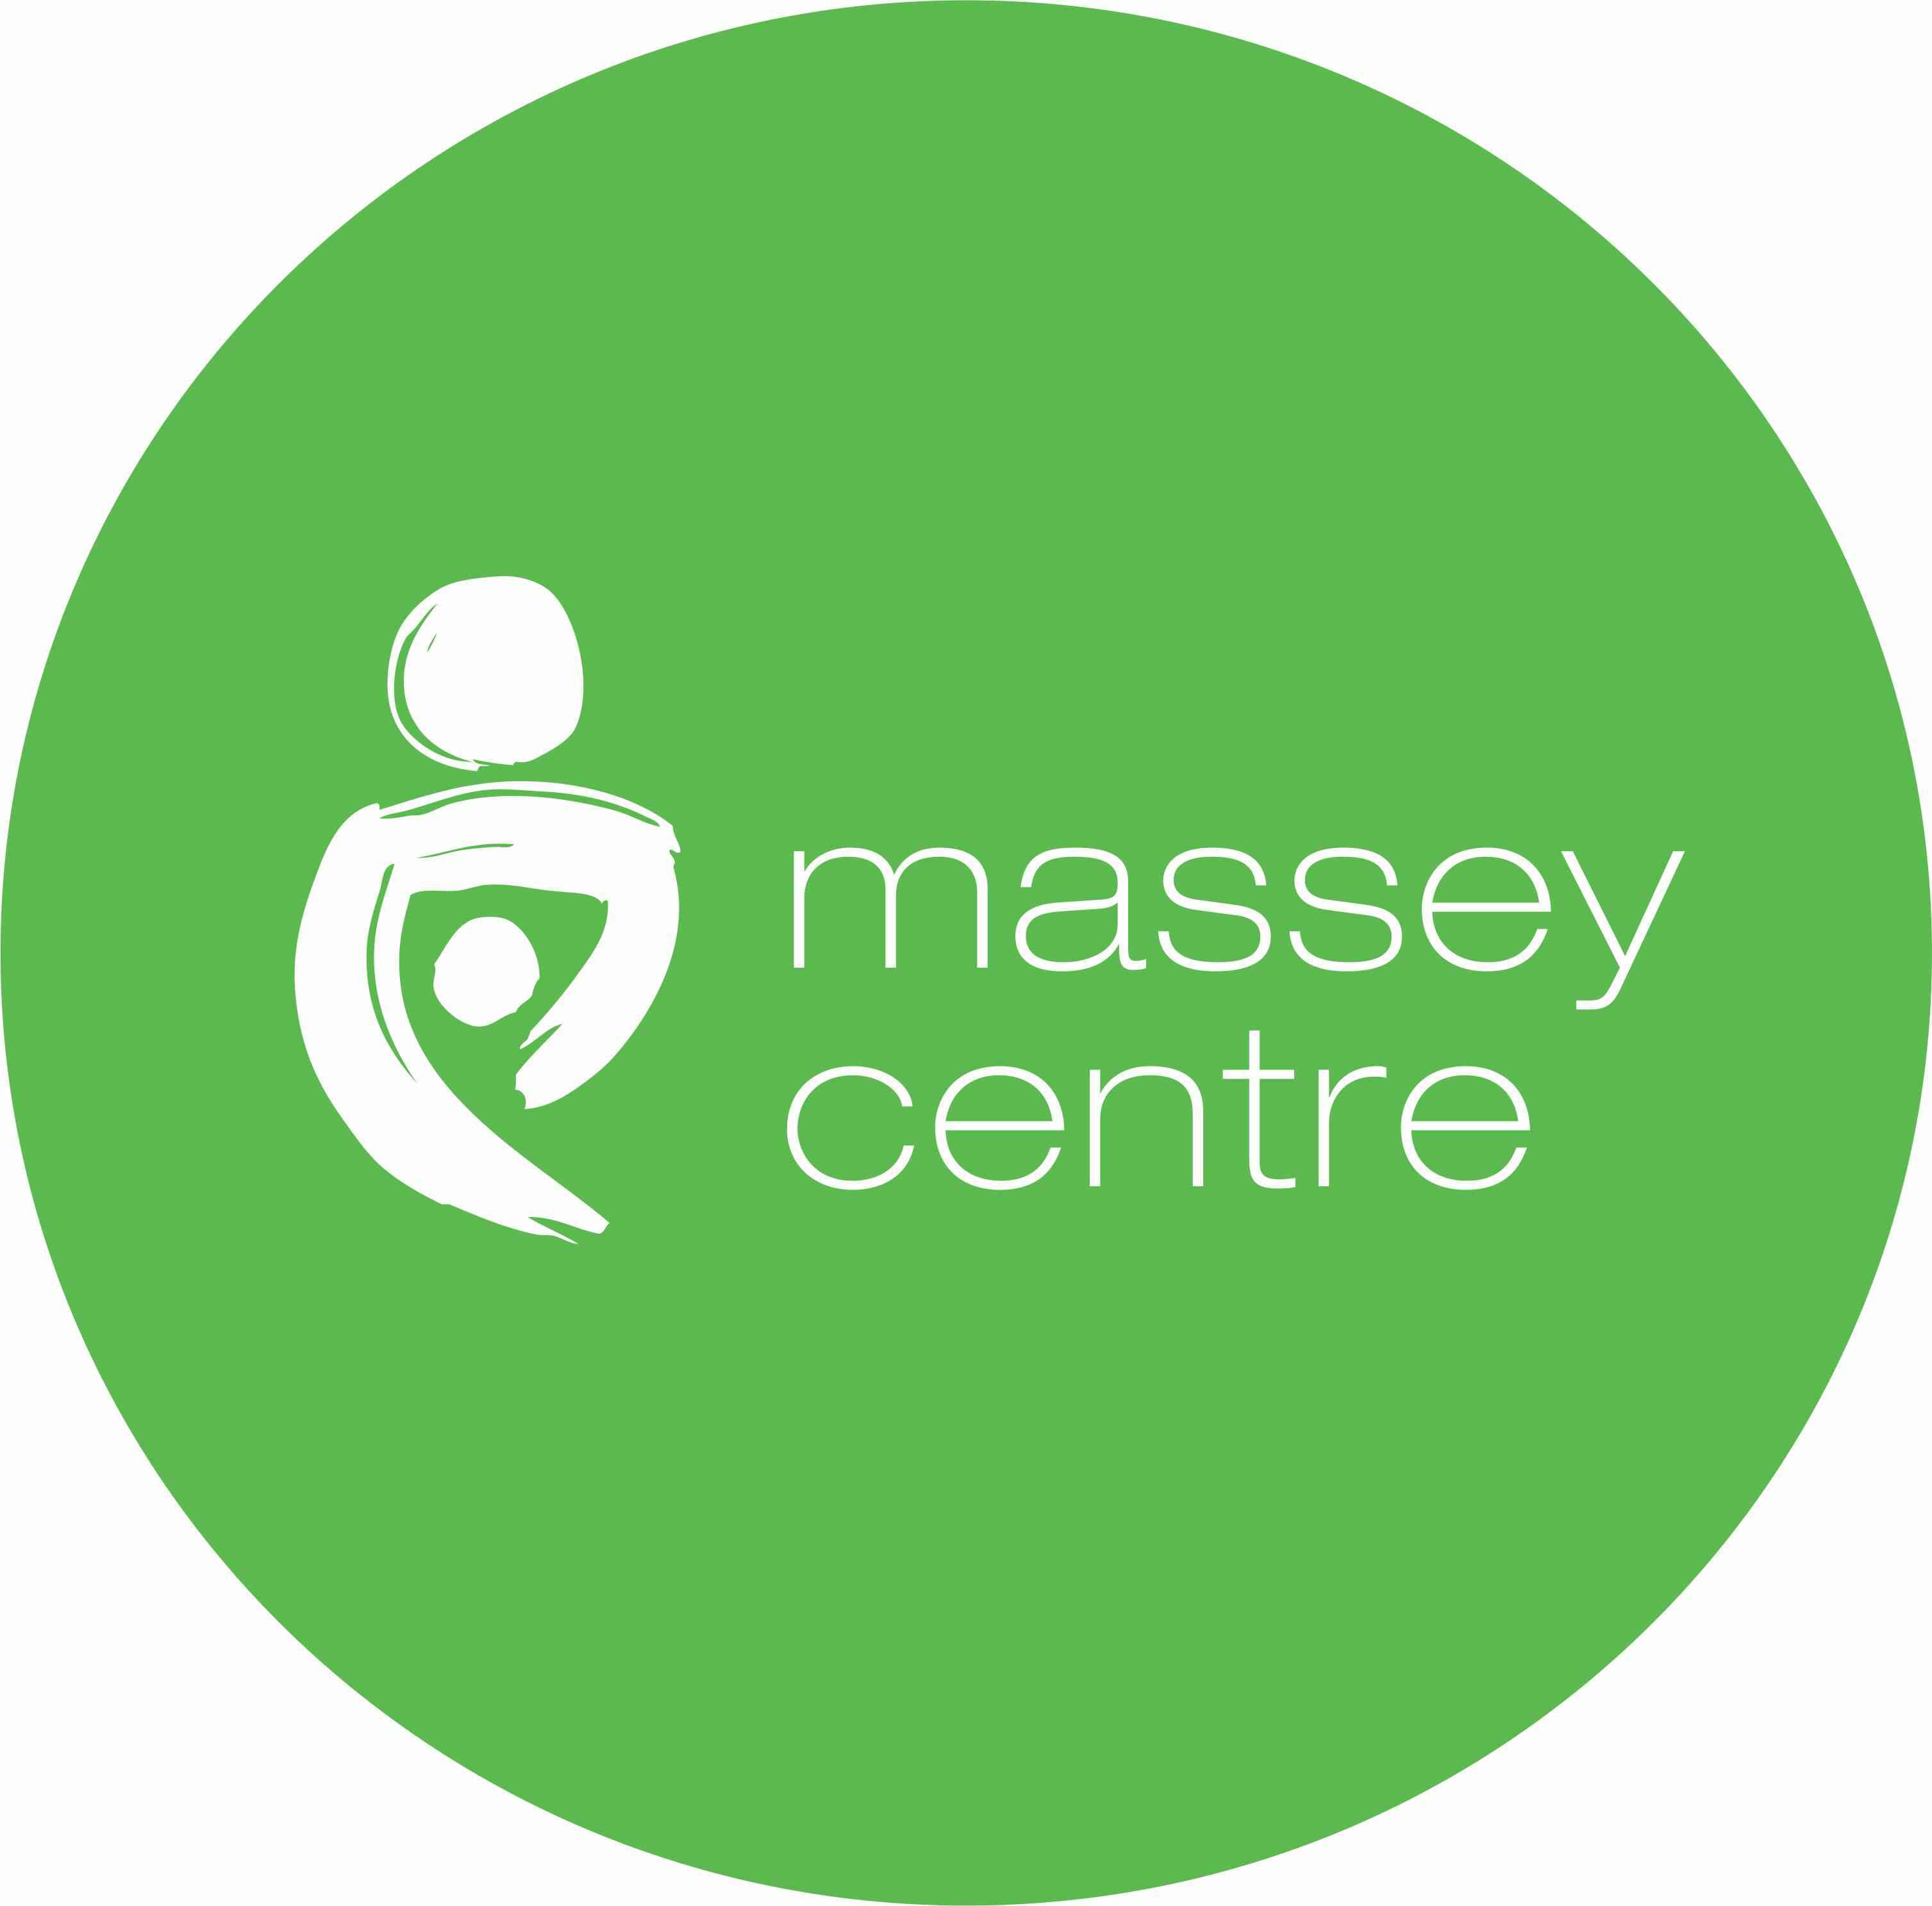 Le Centre Massey reçoit un financement significatif en nouvelle technologies